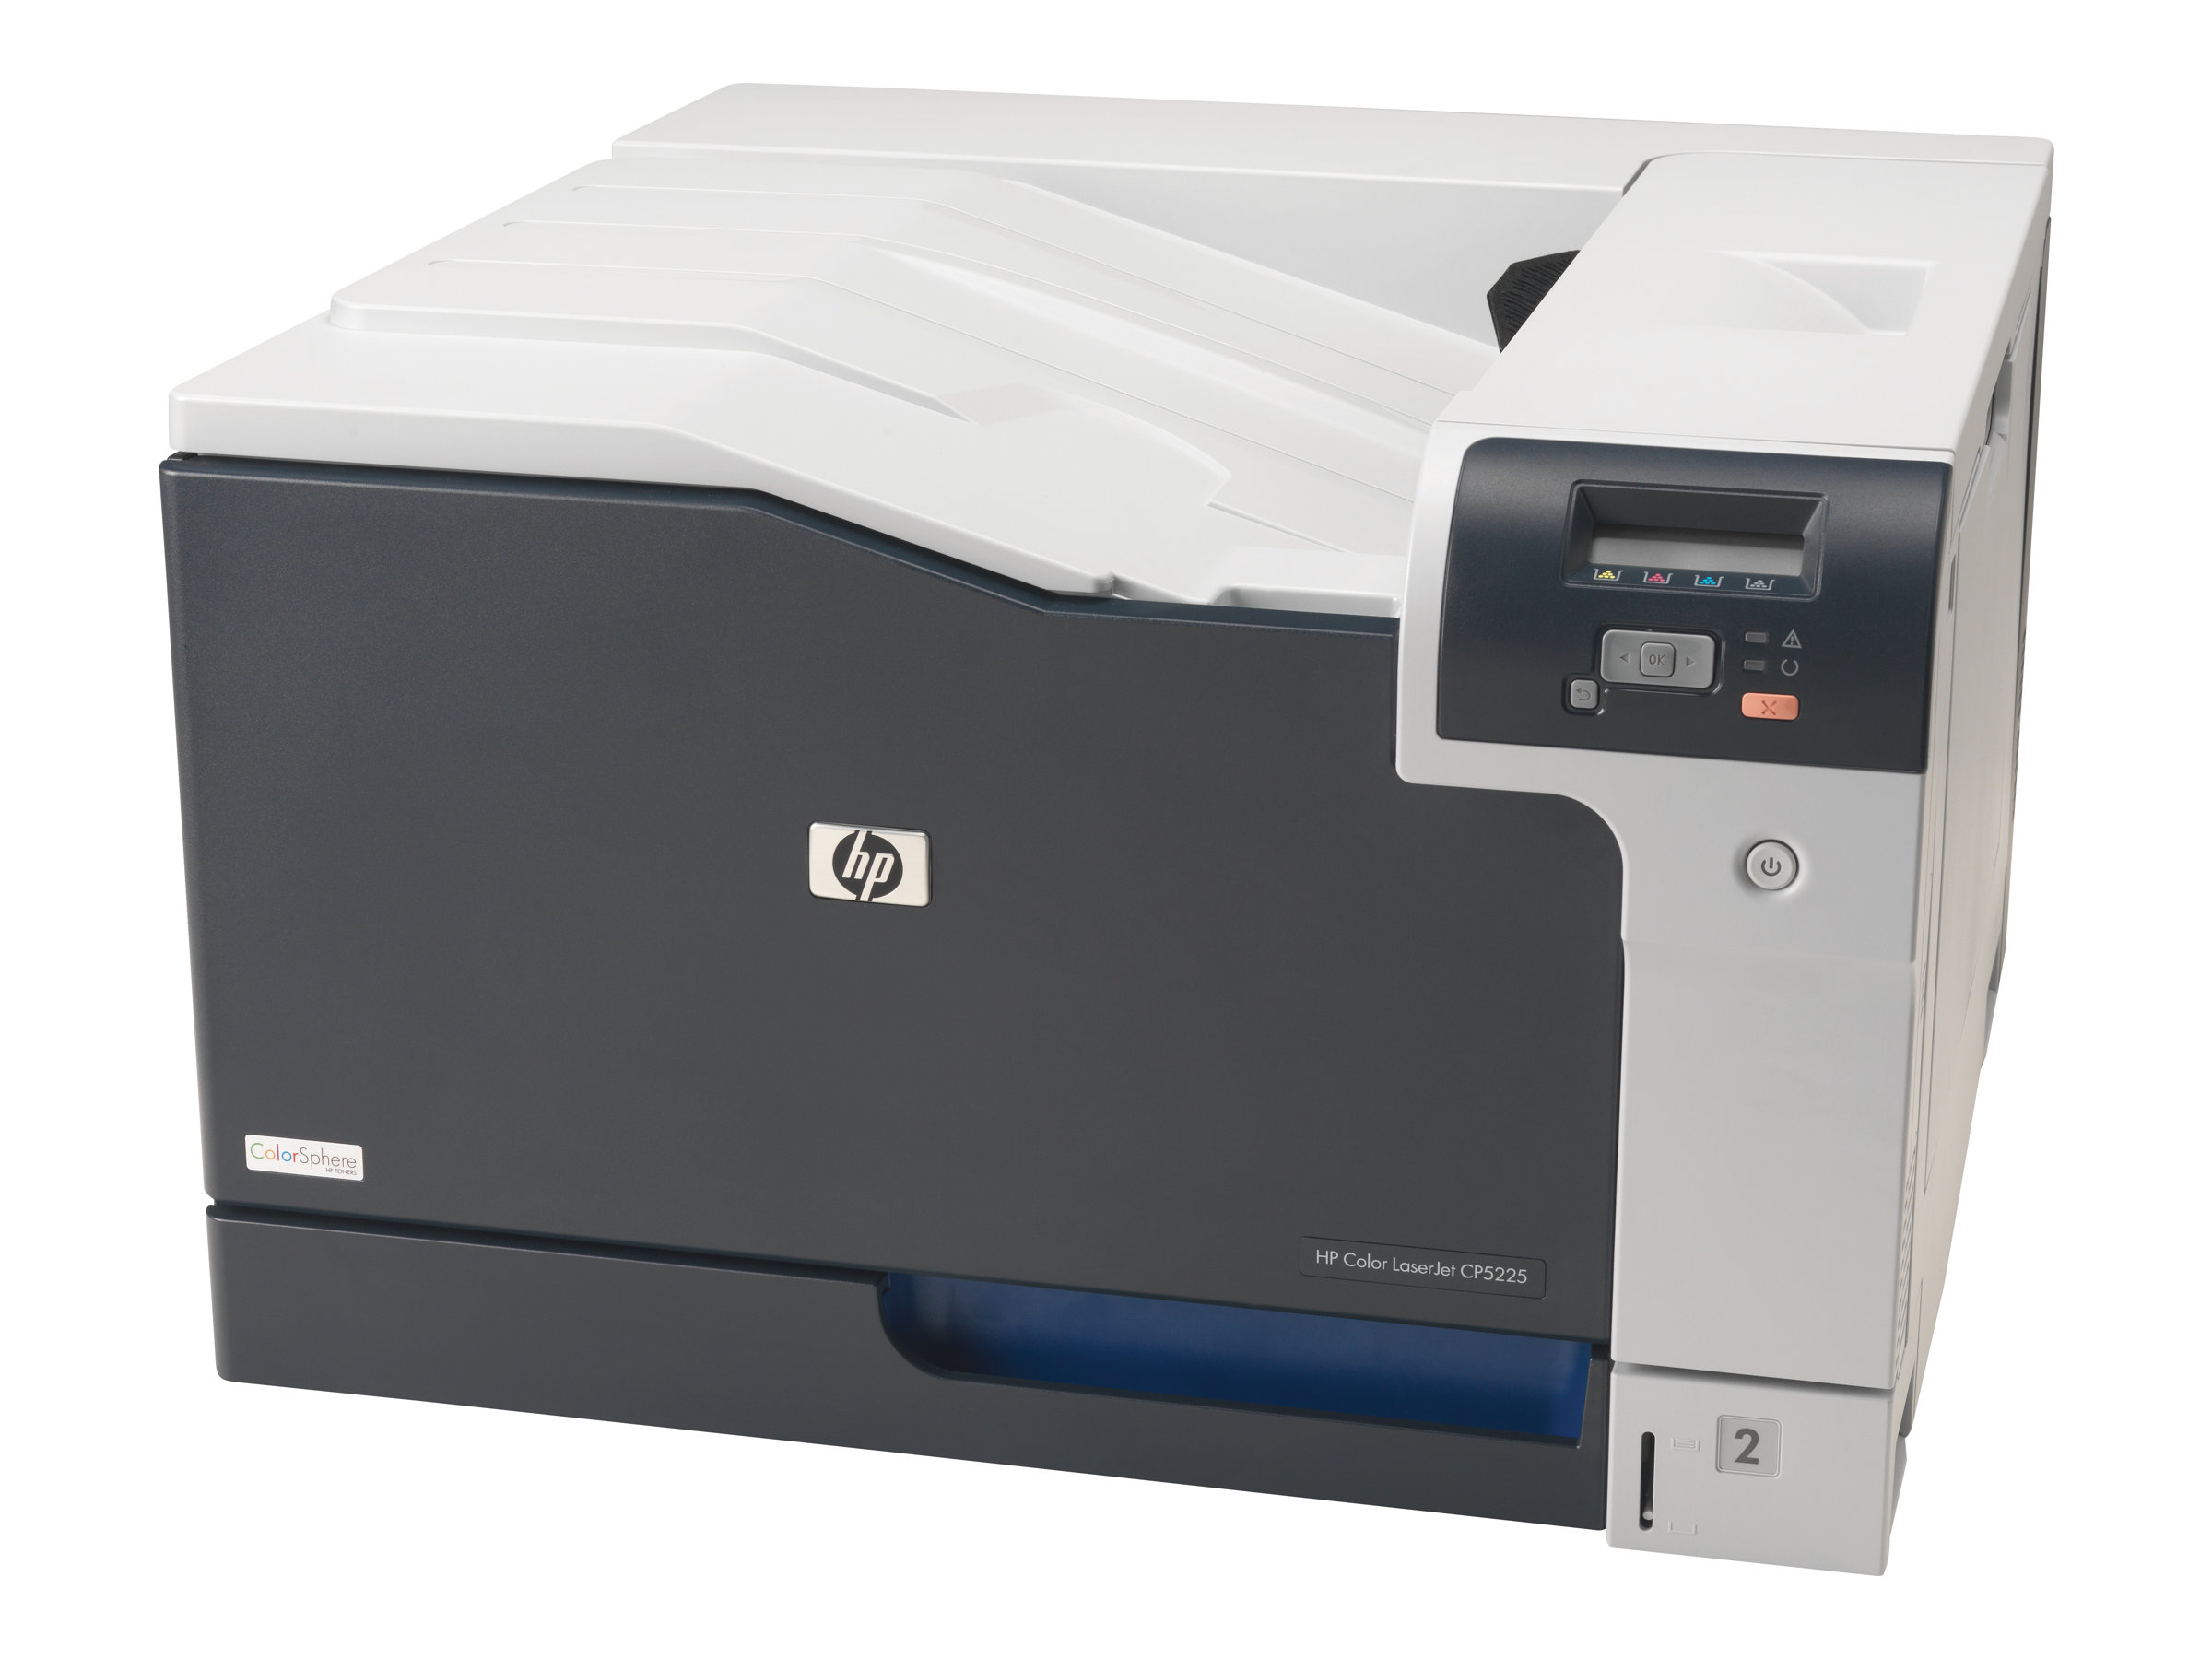 HP Color LaserJet Professional - Printer - farve - Duplex - laser - A3 - 600 dpi - op til spm / op til 20 spm (farve) - kapacitet: 350 ark - USB, LAN